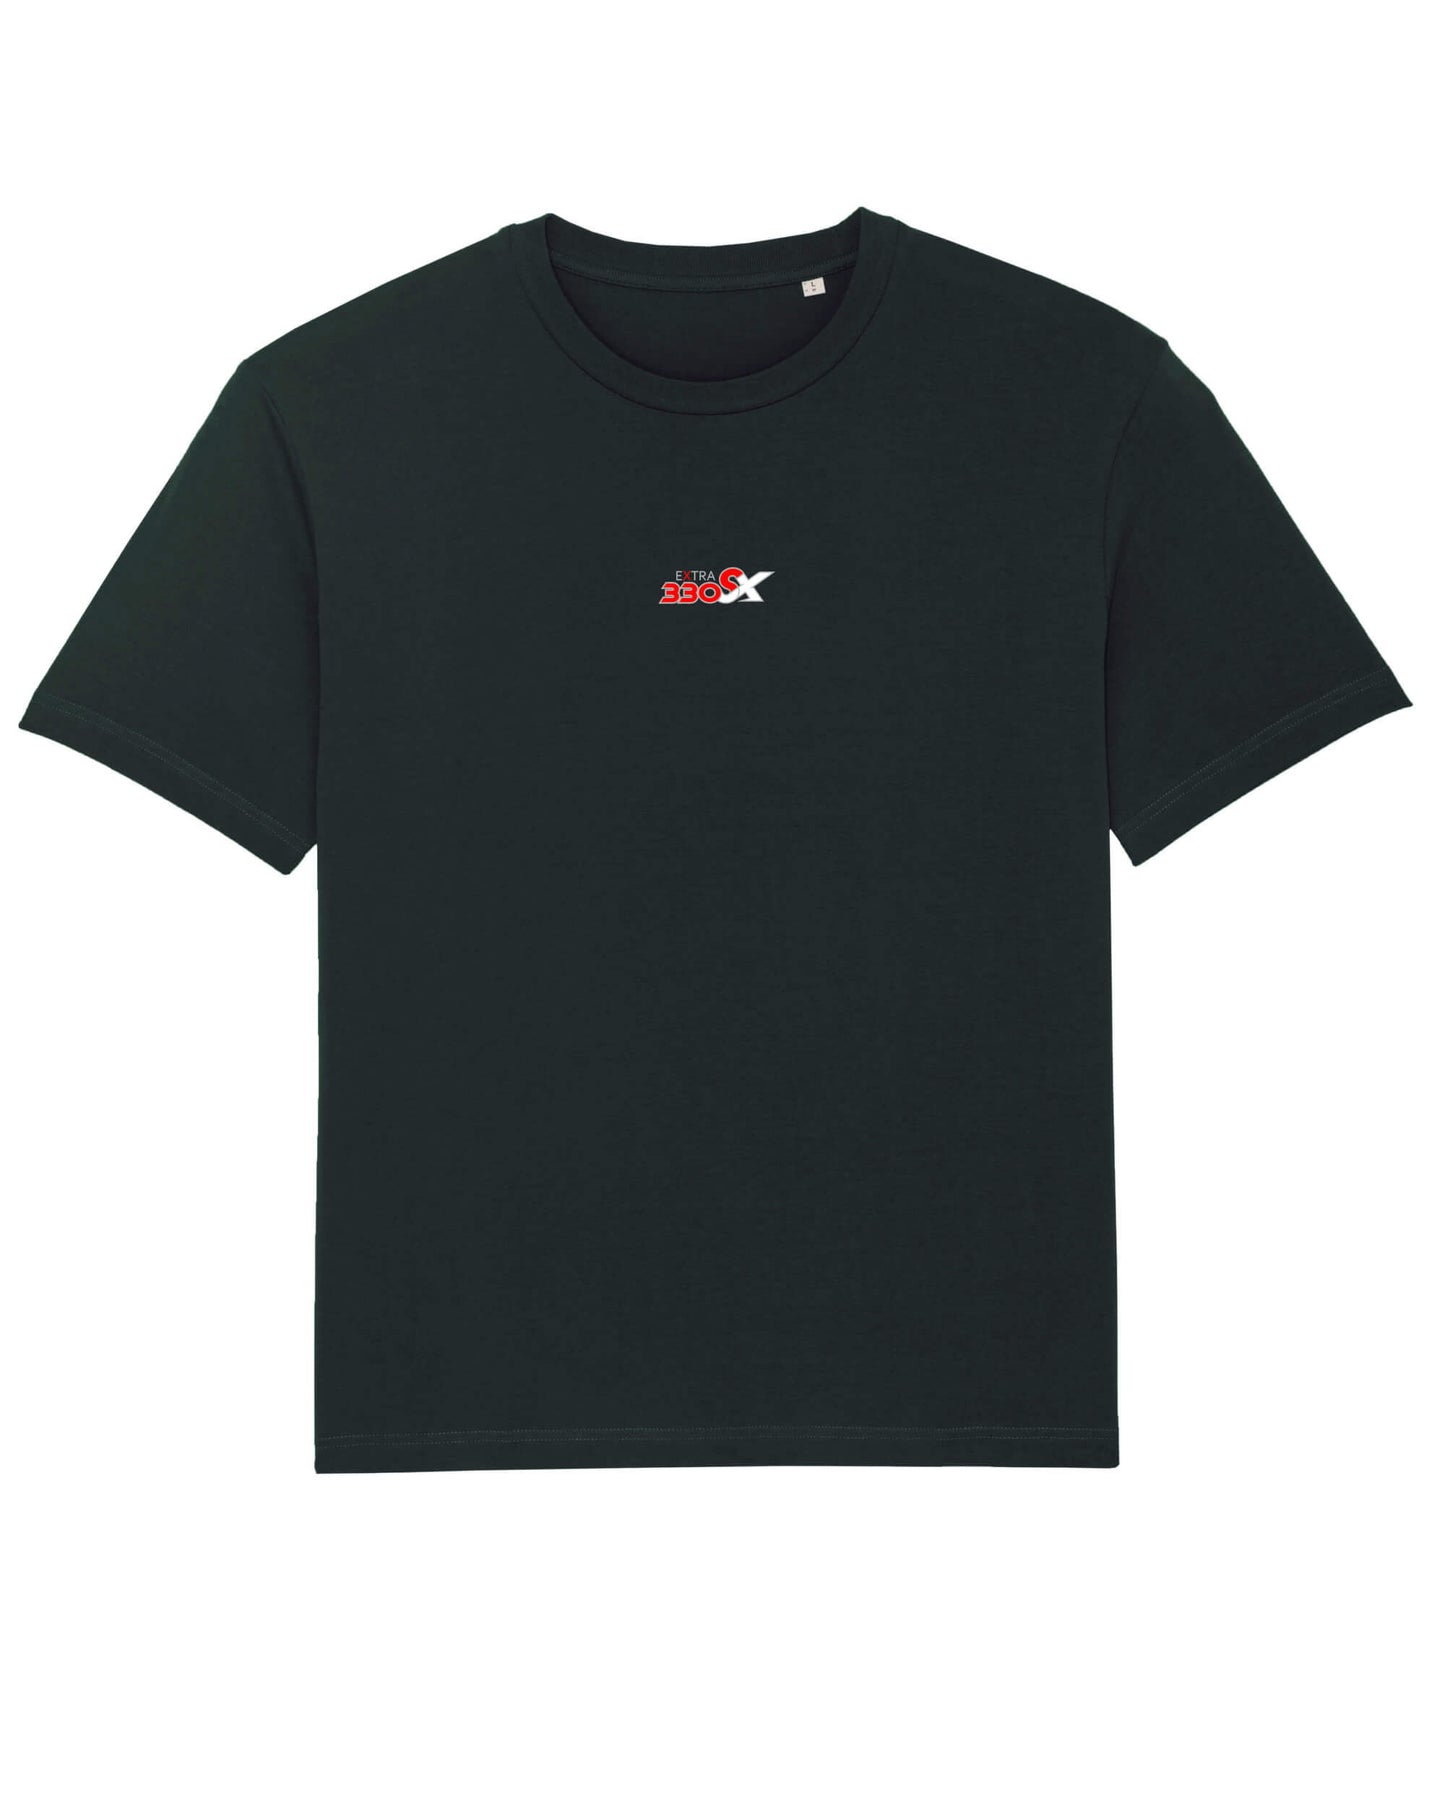 Produktbild eines schwarzen T-Shirts. Mittig auf der Brust ist das Extra 330 SC Modell-Logo abgebildet.